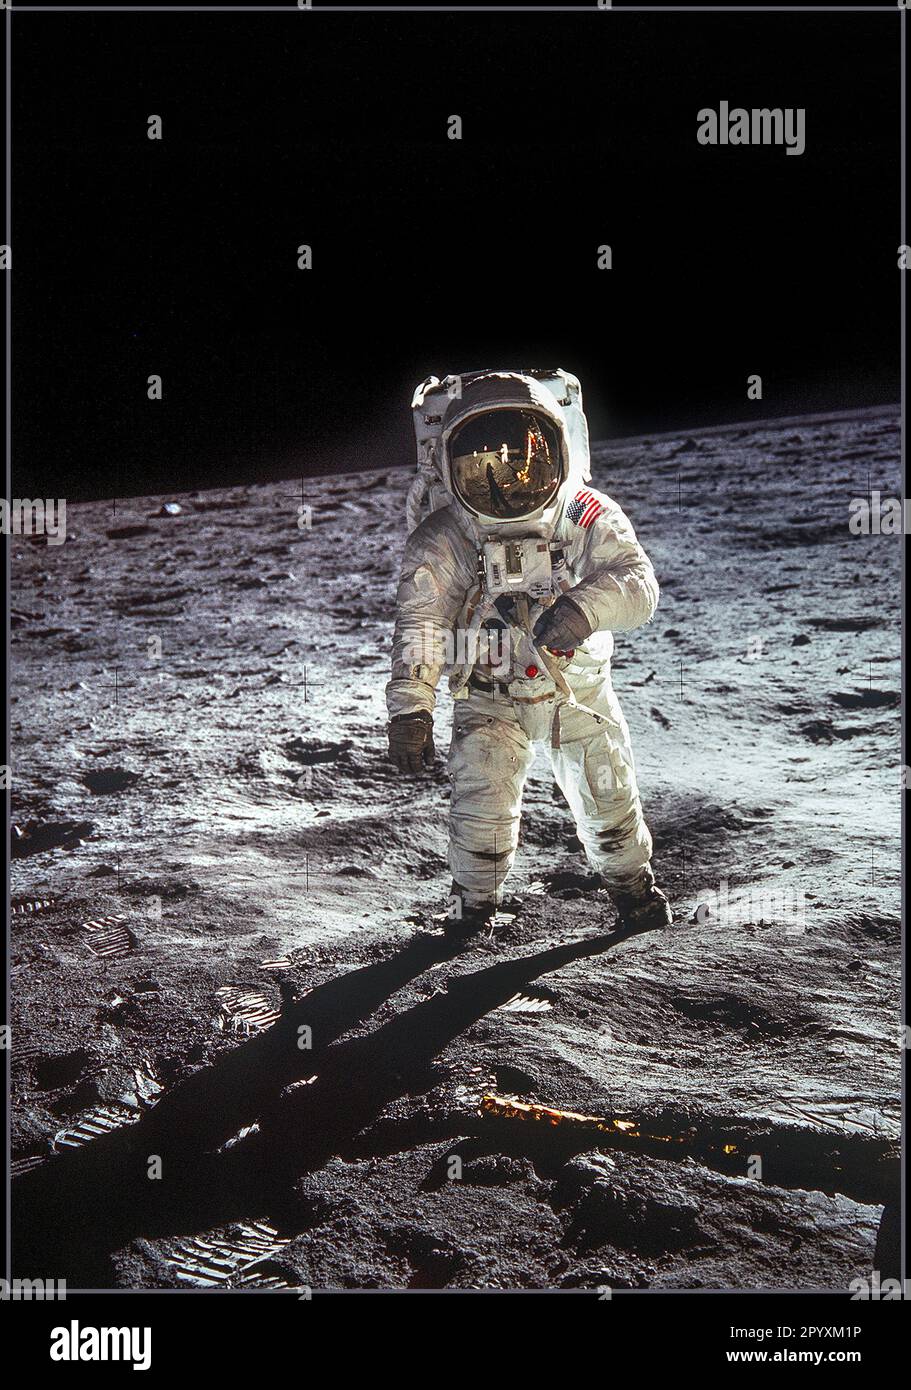 APOLLO 11. 20th luglio 1969 l'astronauta Buzz Aldrin, pilota lunare, cammina sulla superficie della Luna vicino alla gamba del modulo lunare (LM) 'Eagle' durante l'attività straveicolare dell'Apollo 11 (EVA). L'astronauta Neil A. Armstrong, comandante, ha scattato questa fotografia con una telecamera di superficie lunare 70mm. Mentre gli astronauti Armstrong e Aldrin scesero nel Lunar Module (LM) 'Eagle' per esplorare la regione Sea of tranquility della Luna, l'astronauta Michael Collins, pilota del modulo di comando, rimase con i Command and Service Modules (CSM) 'Columbia' in orbita lunare. Foto Stock